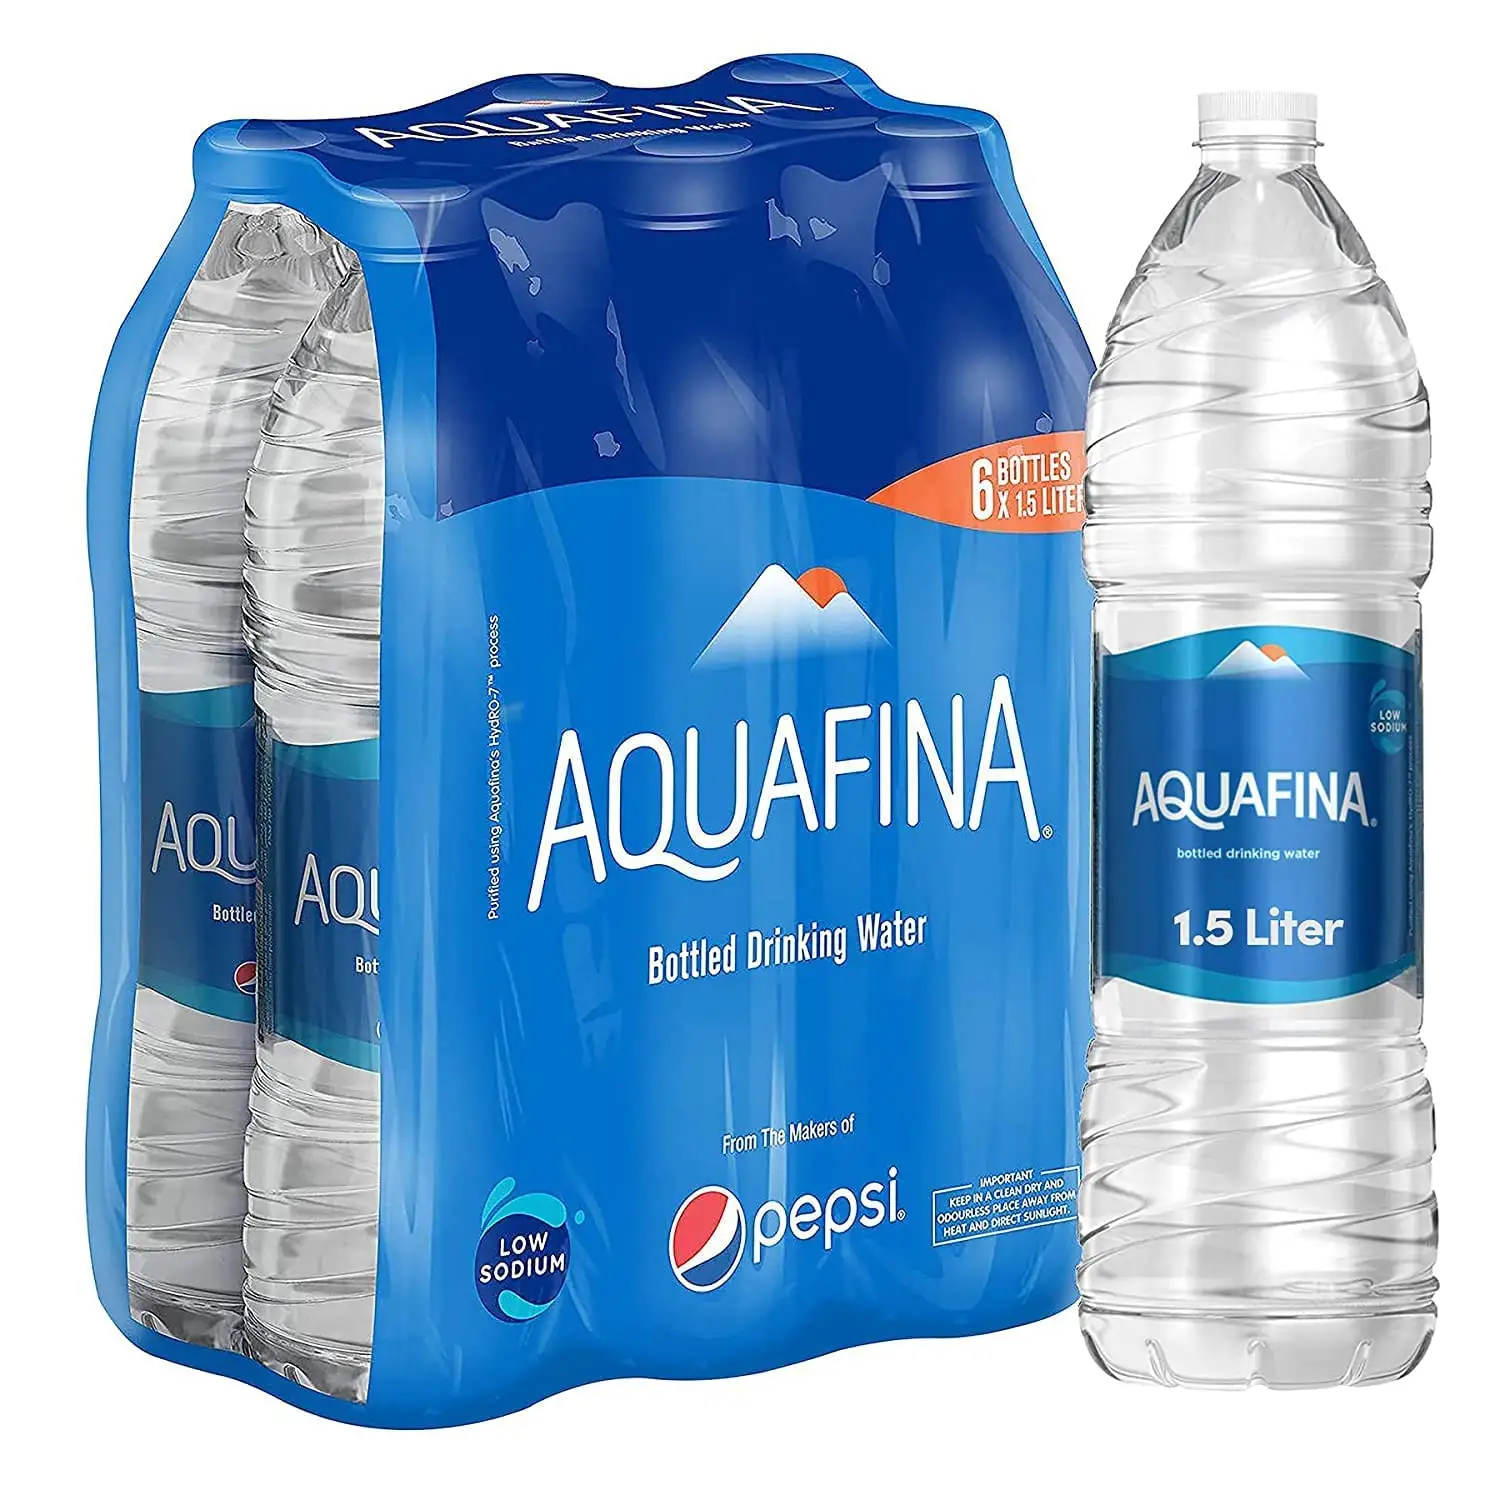 AQUAFINA arıtılmış içme suyu, mükemmel tat 24x16.9 Oz şişeler/satılık en iyi içme suyu Aquafina şişe